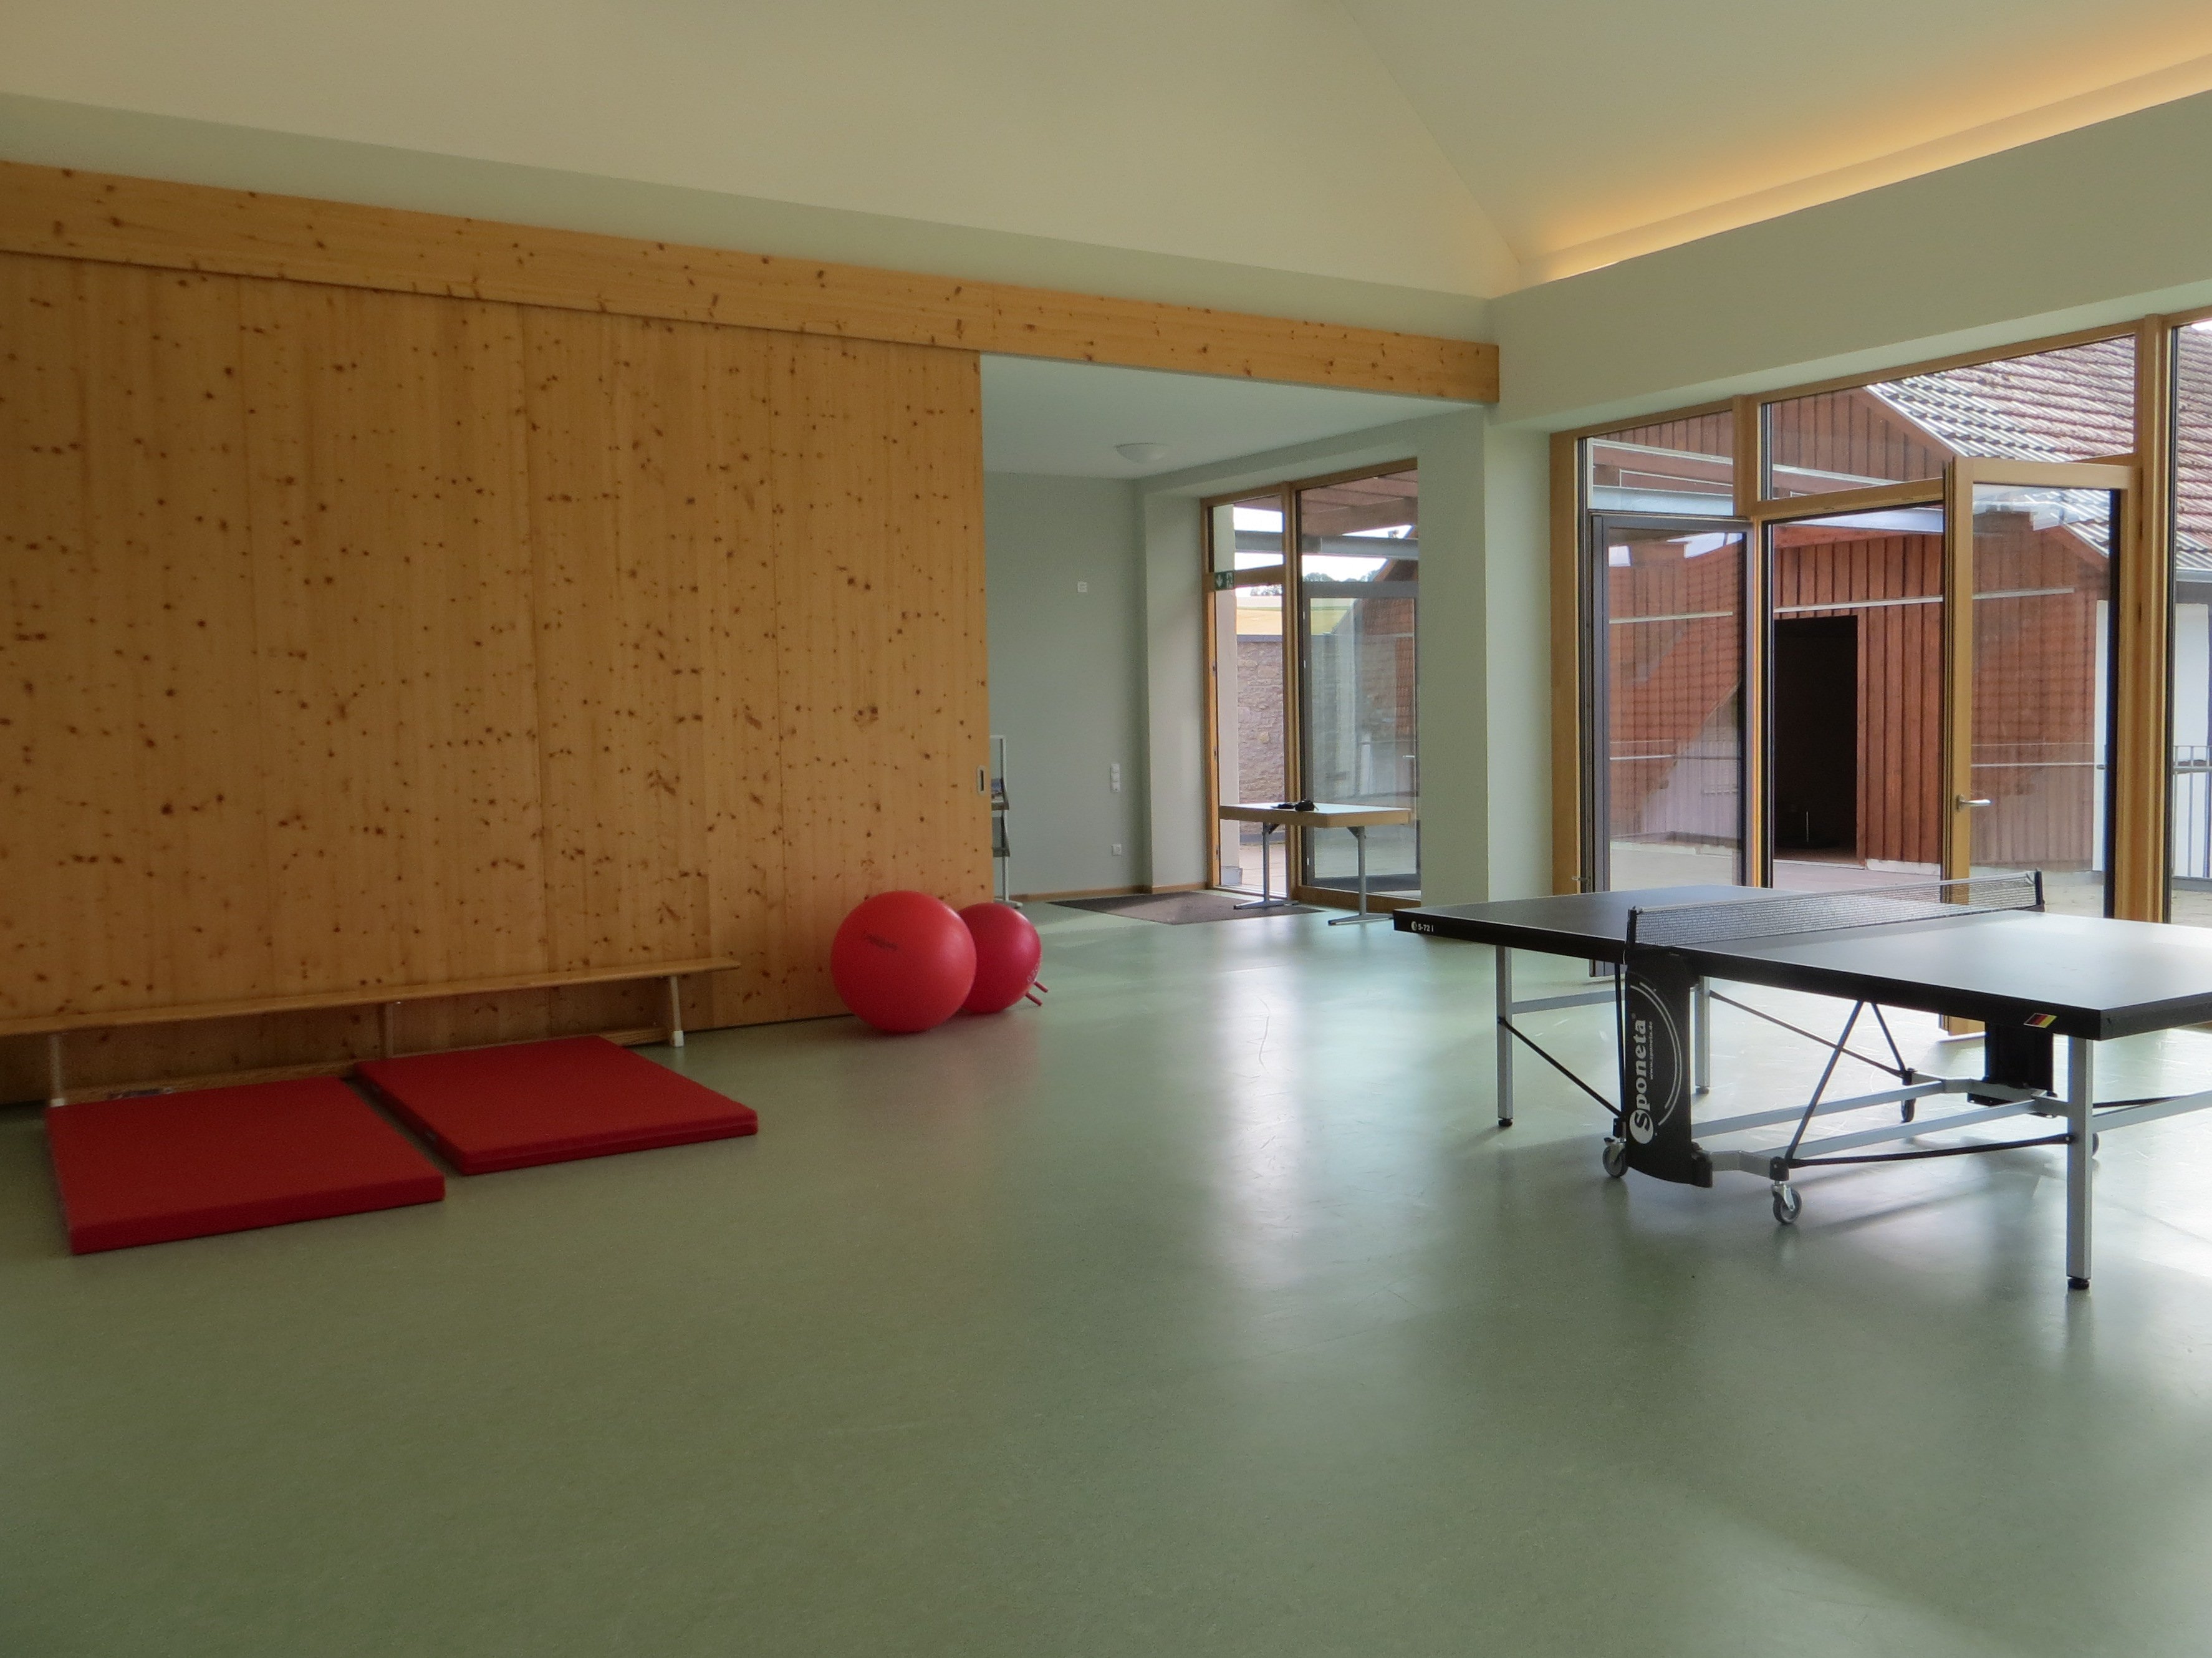 Foto der modernen Sporthalle mit Tischtennisplatte, Matten und Gymnastikbällen.